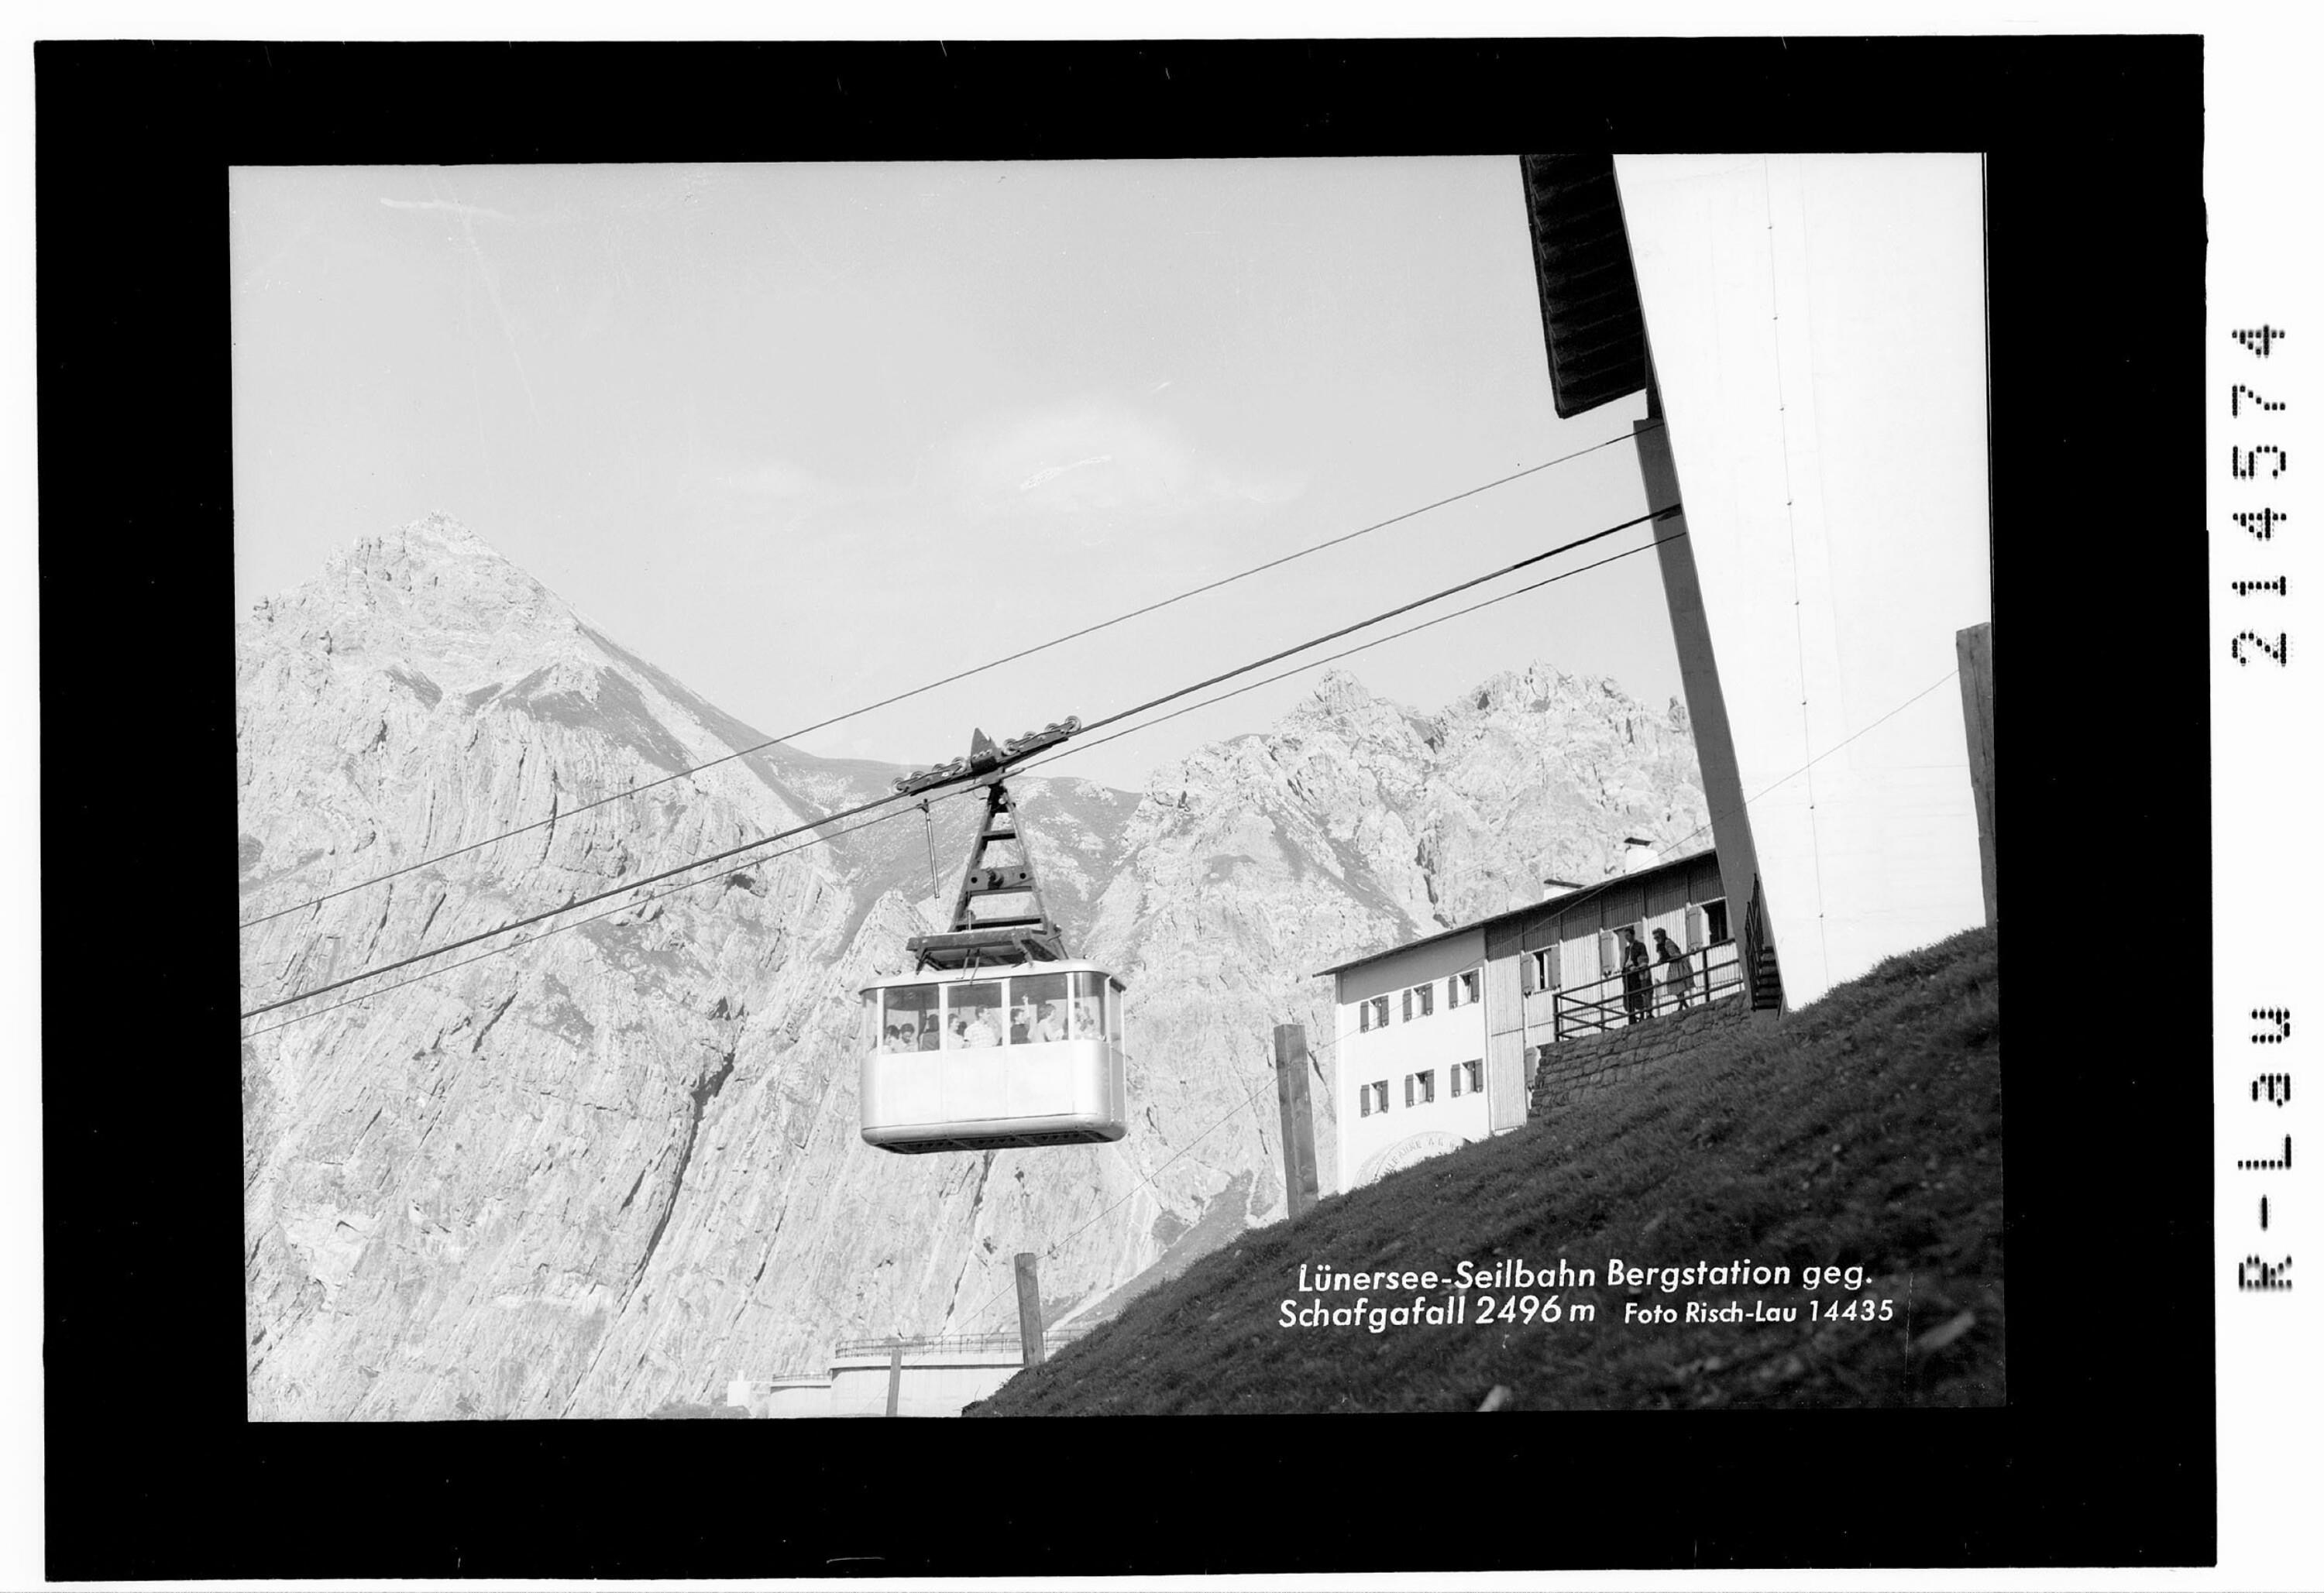 Lünersee - Seilbahn Bergstation gegen Schafgasfall 2496 m></div>


    <hr>
    <div class=